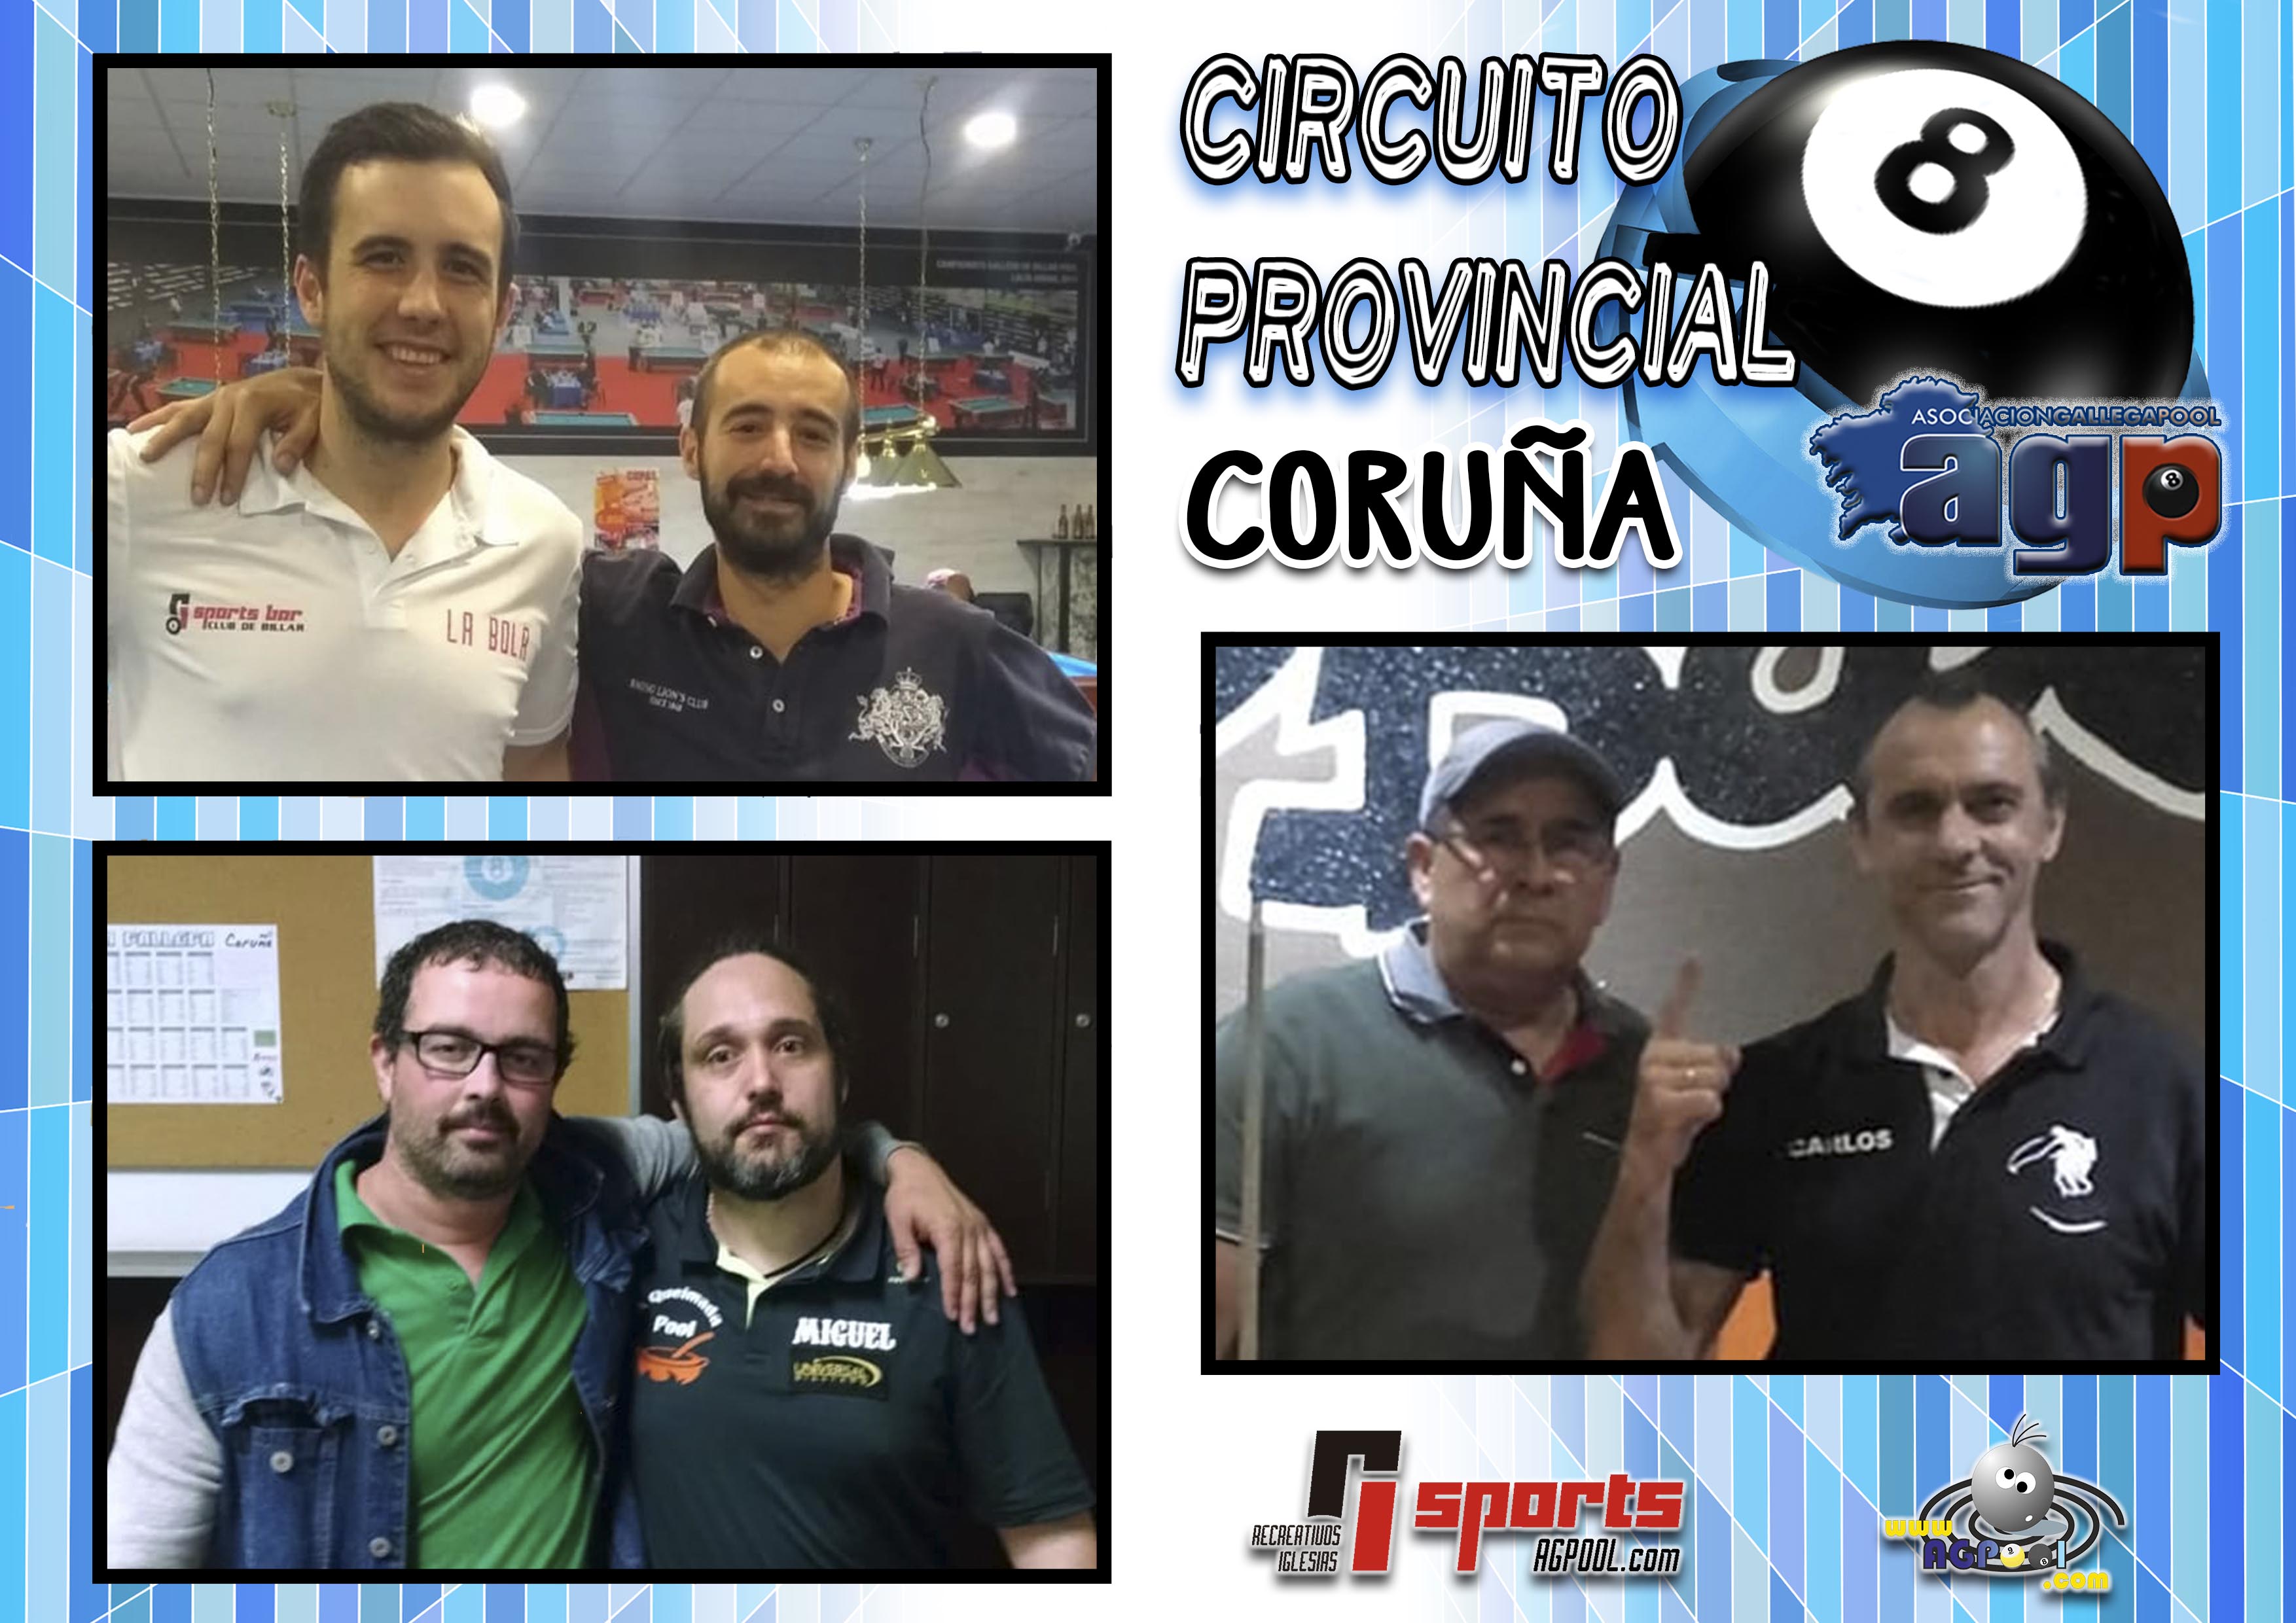 Campeones Circuitos Provinciales de Coruña